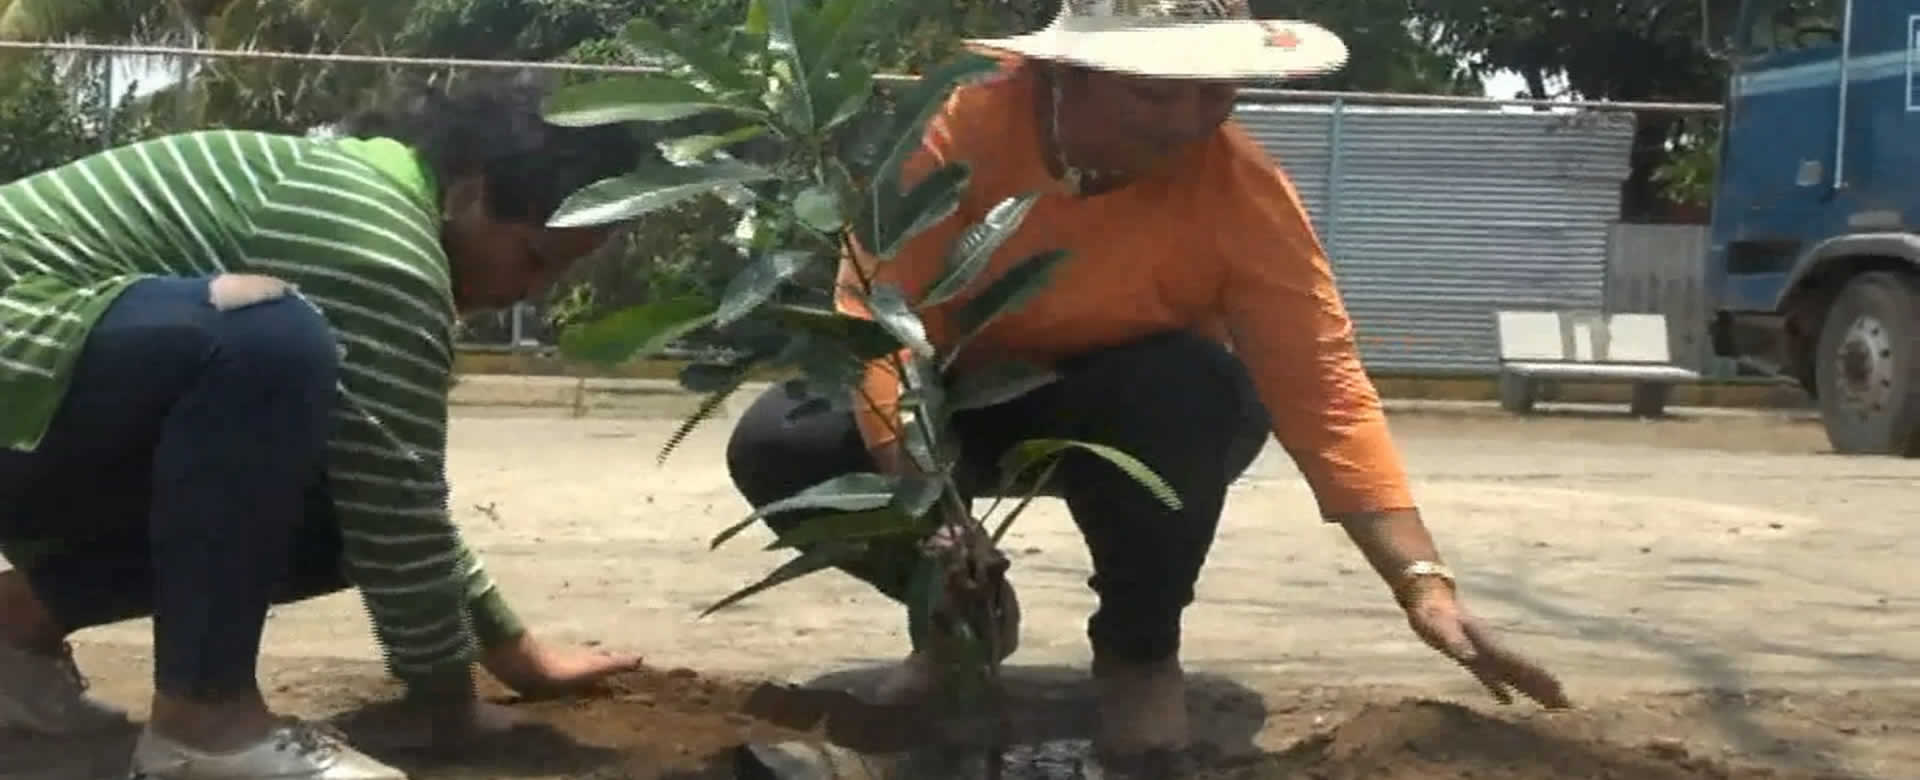 Managua: En Villa El Carmen se realiza jornada de reforestación con amor al municipio